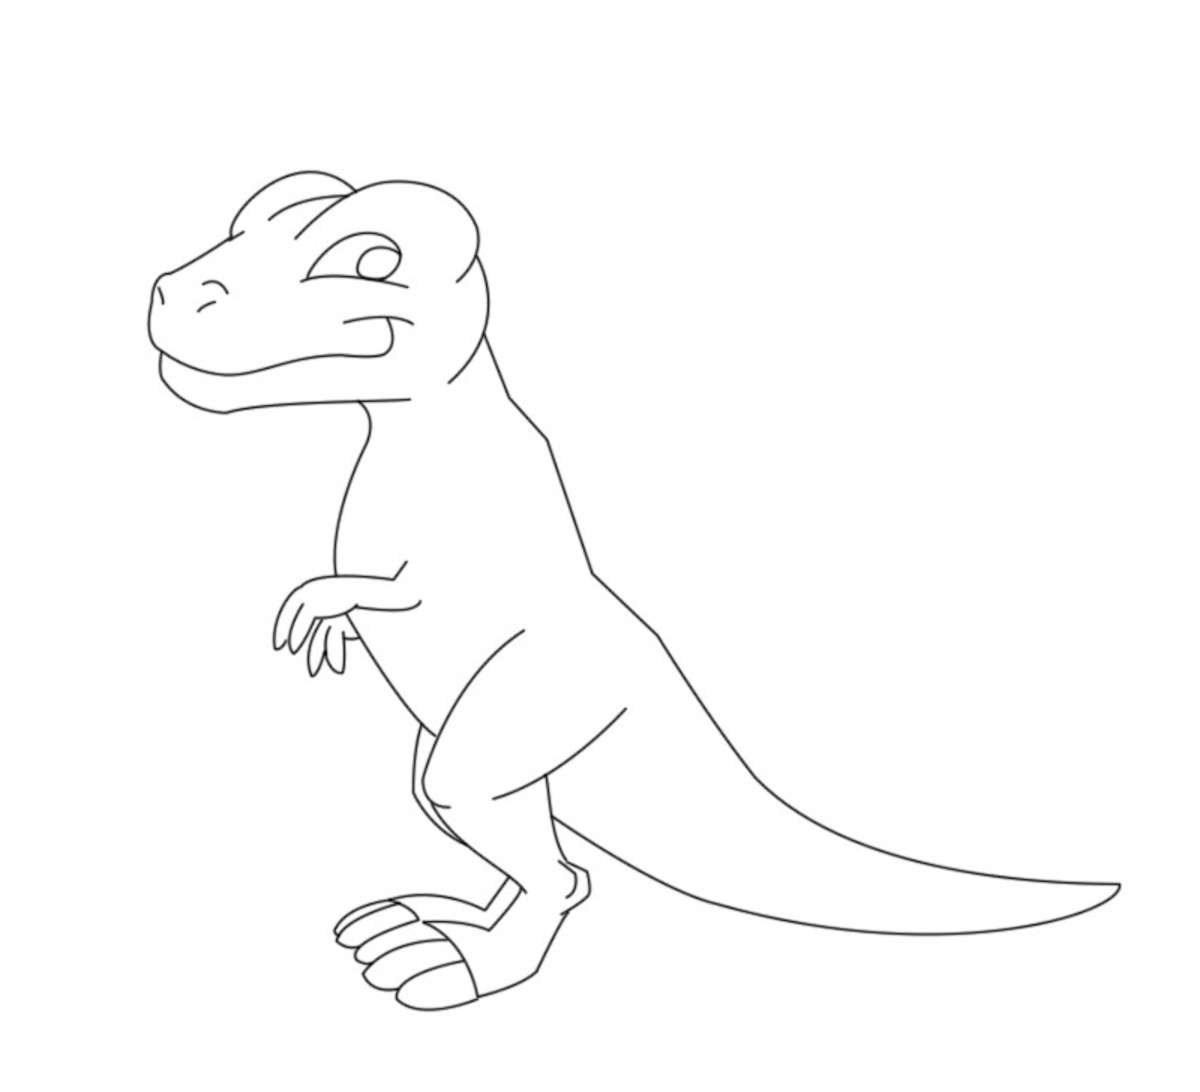 How to Draw a Cartoon T-Rex - FeltMagnet